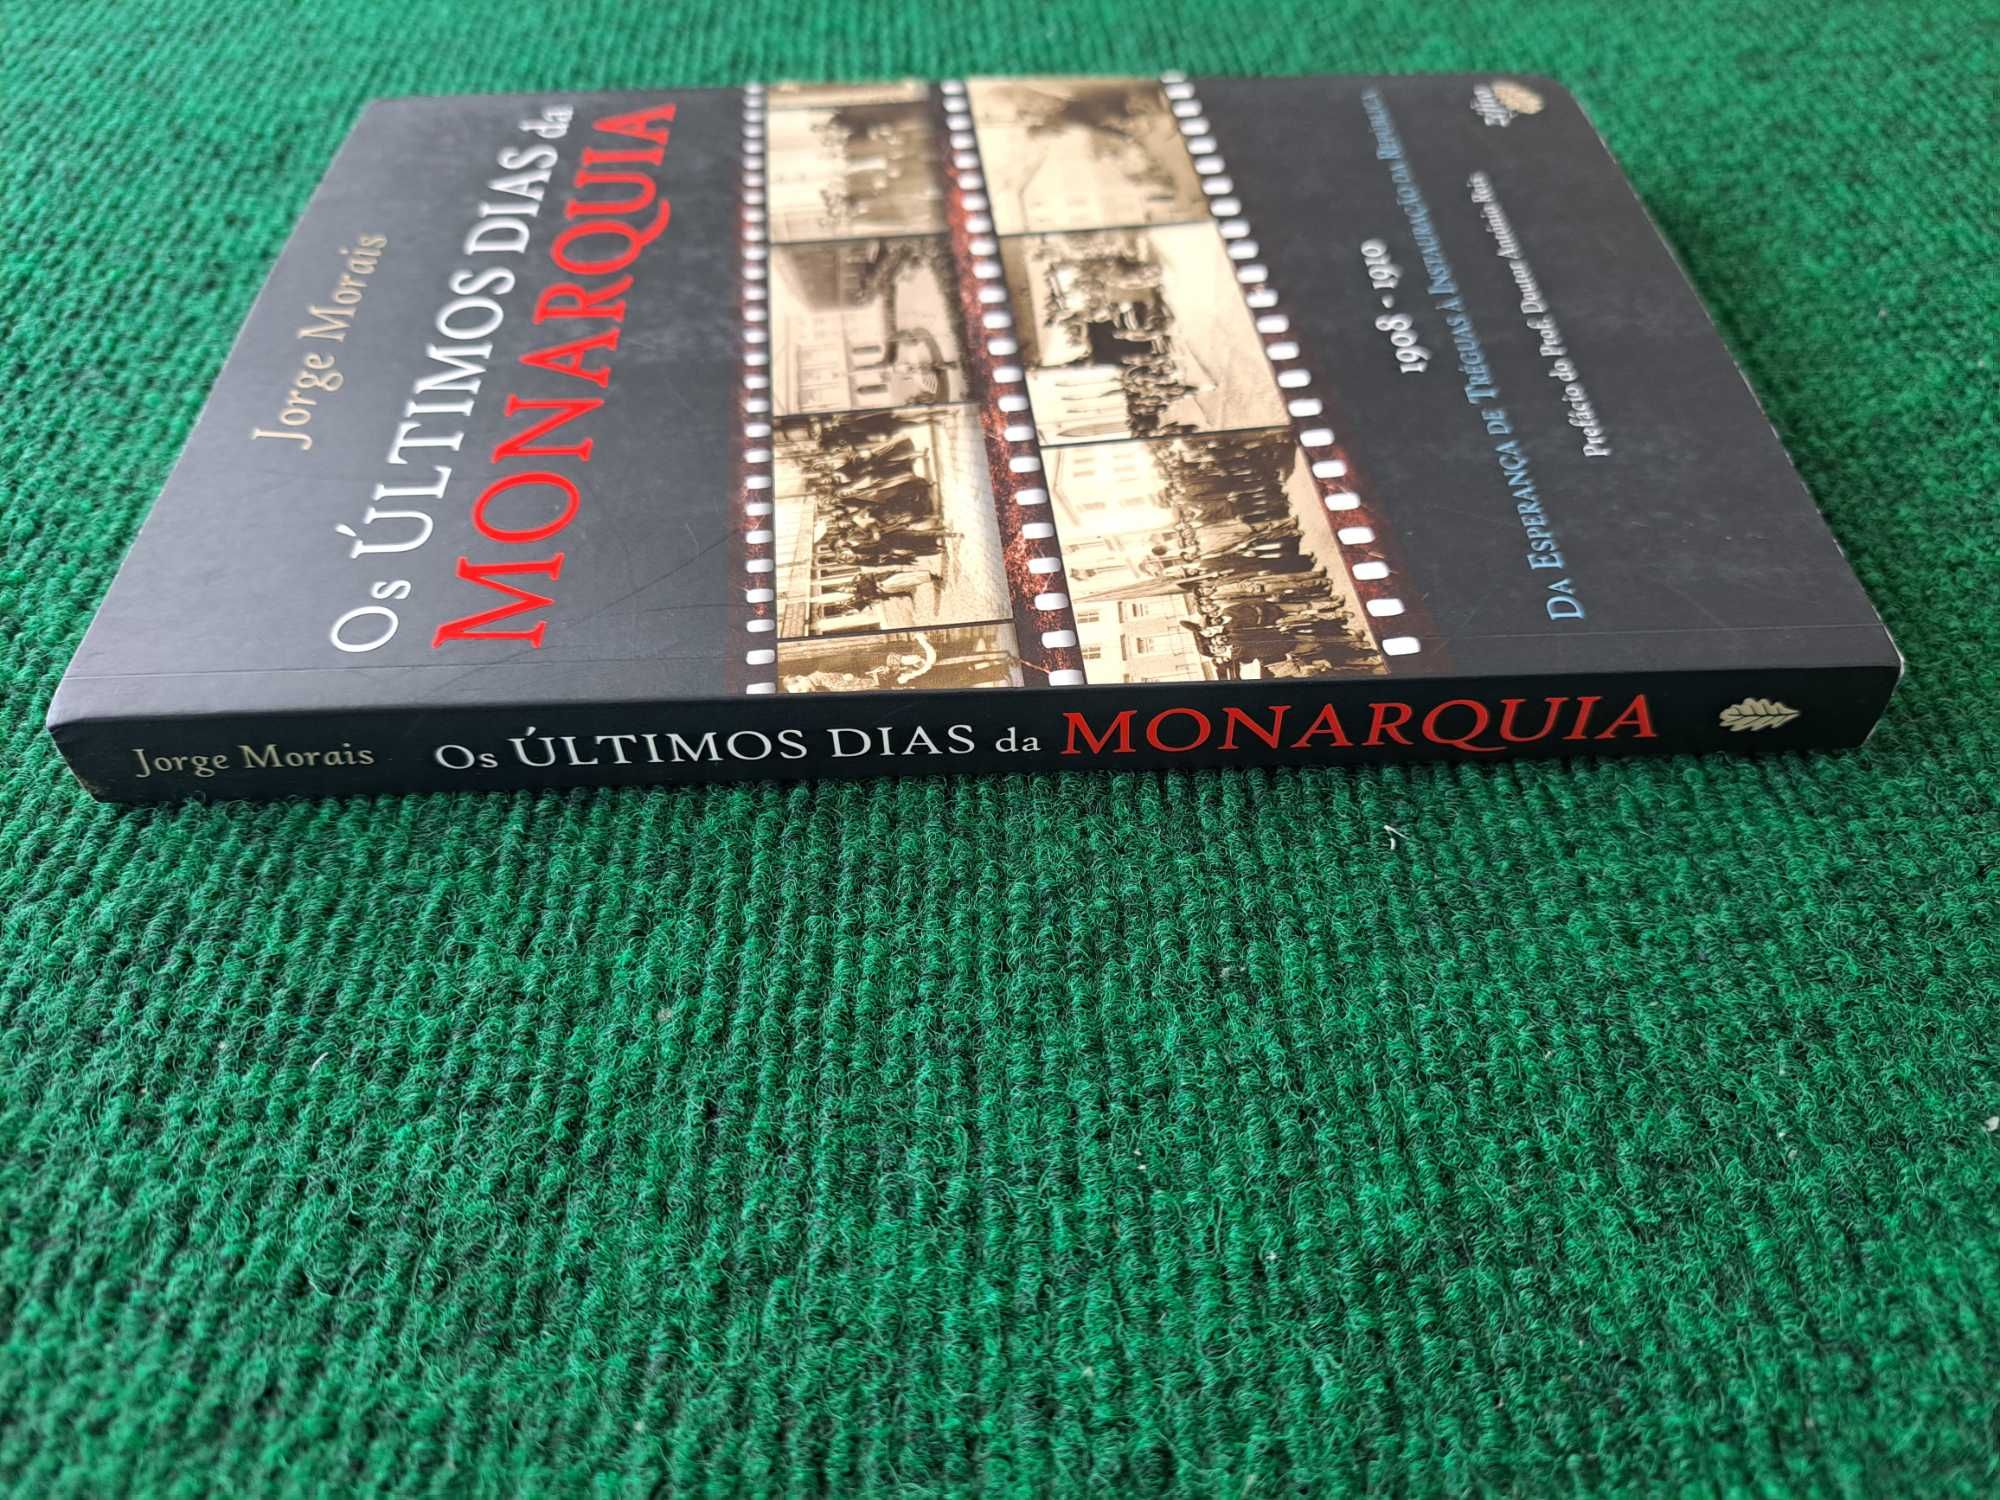 Os ultimos dias da Monarquia - 1908/1910 - Jorge Morais